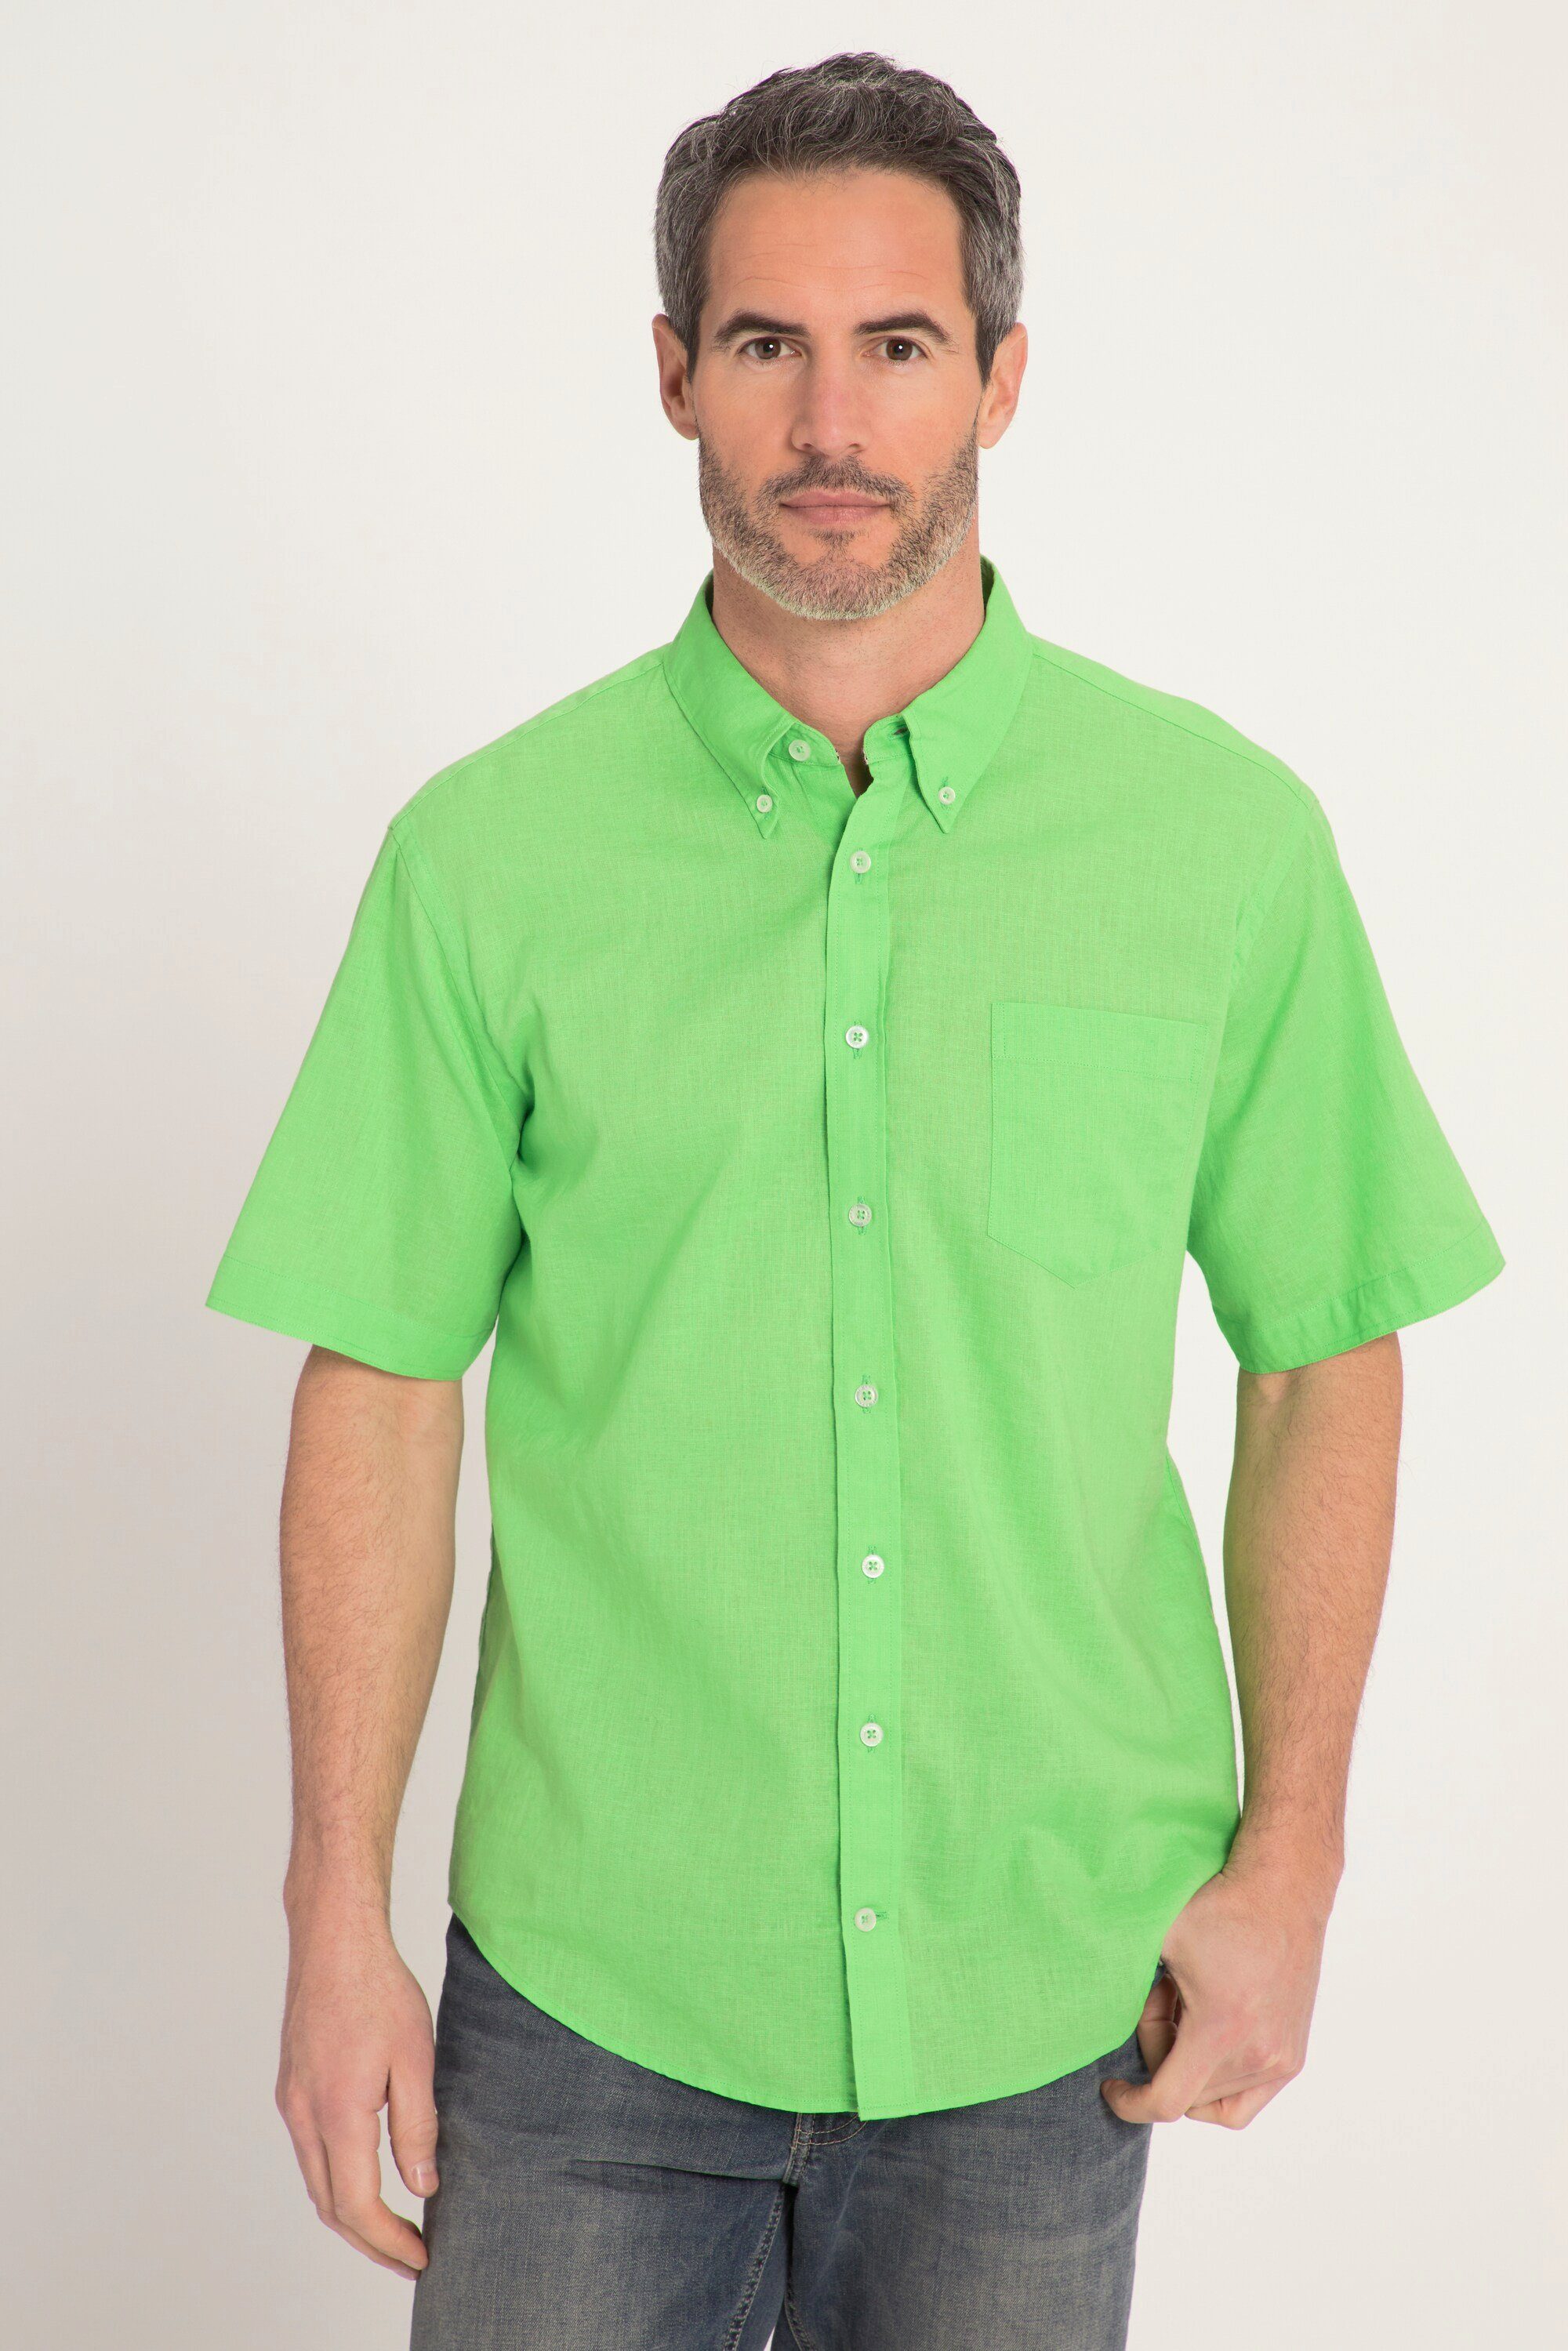 Grüne Kurzarm Hemden für Herren online kaufen | OTTO